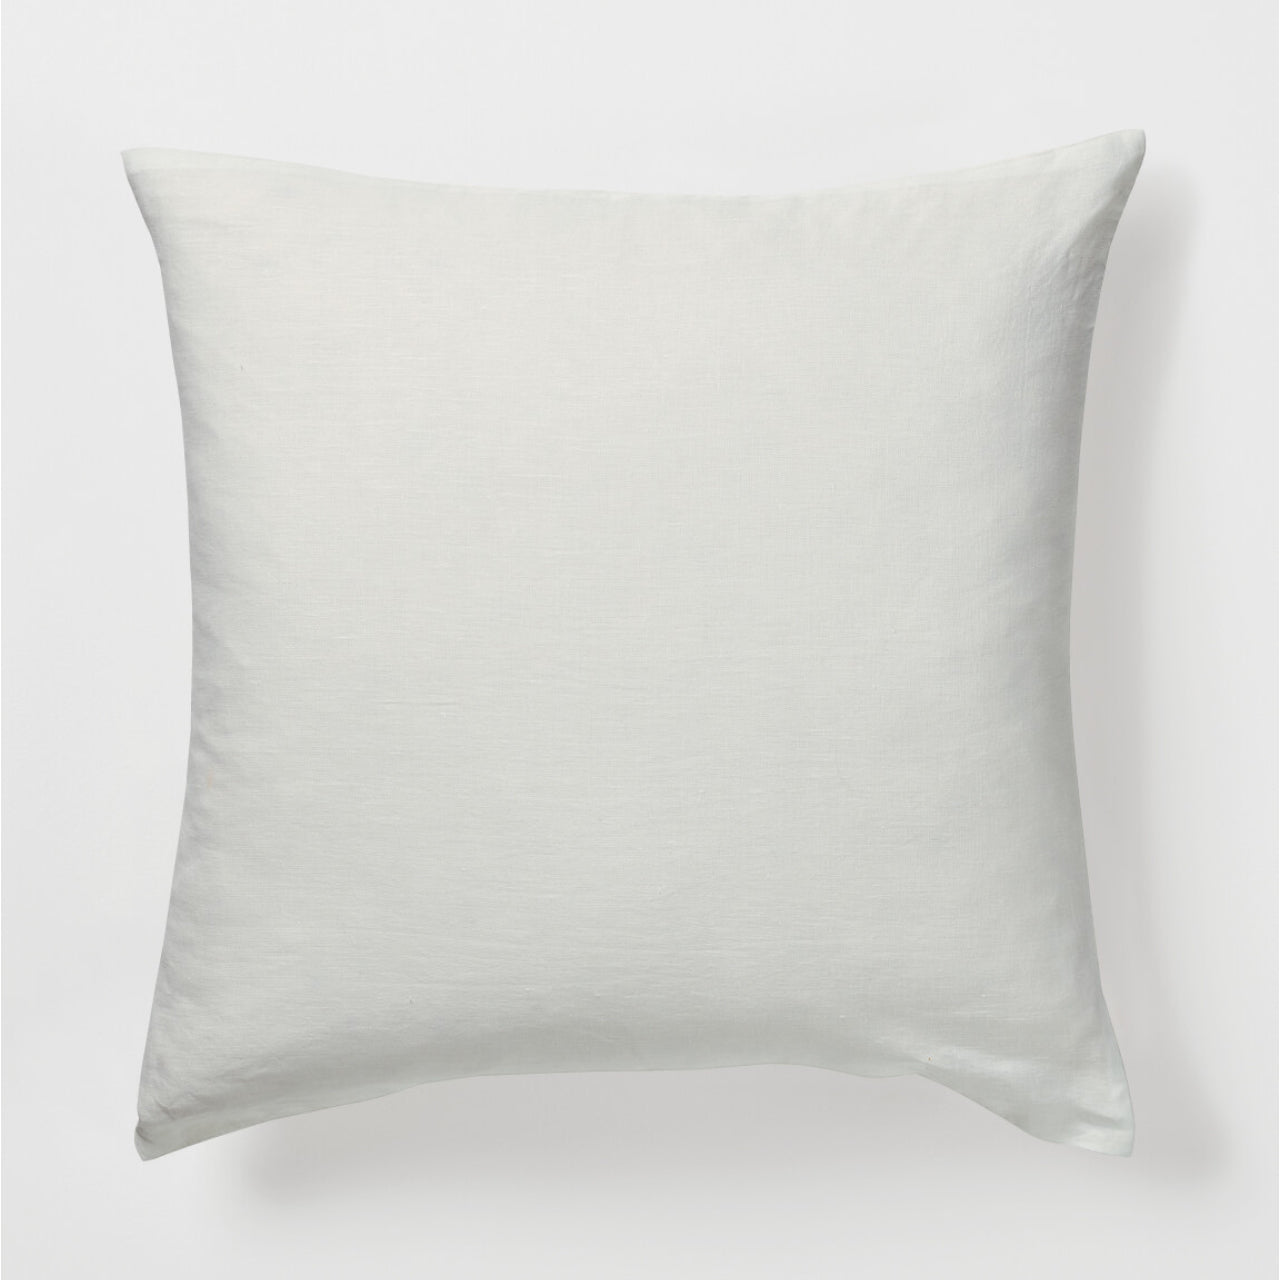 Elayna European Pillowcase White on a white background